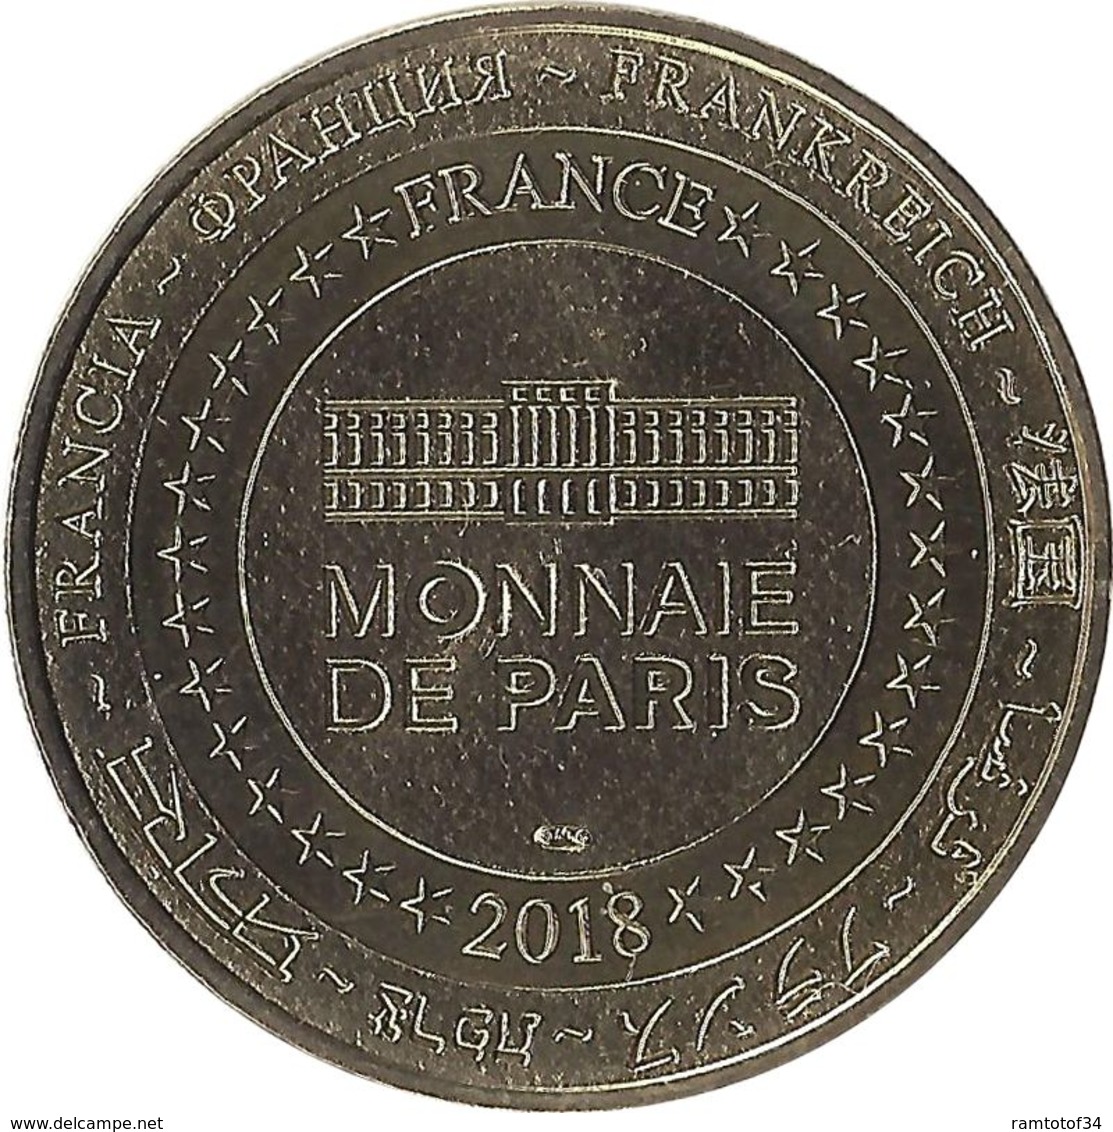 2018 MDP235 - ARC-ET-SENANS - Saline Royale 5 (Entrée) / MONNAIE DE PARIS 2018 - 2018